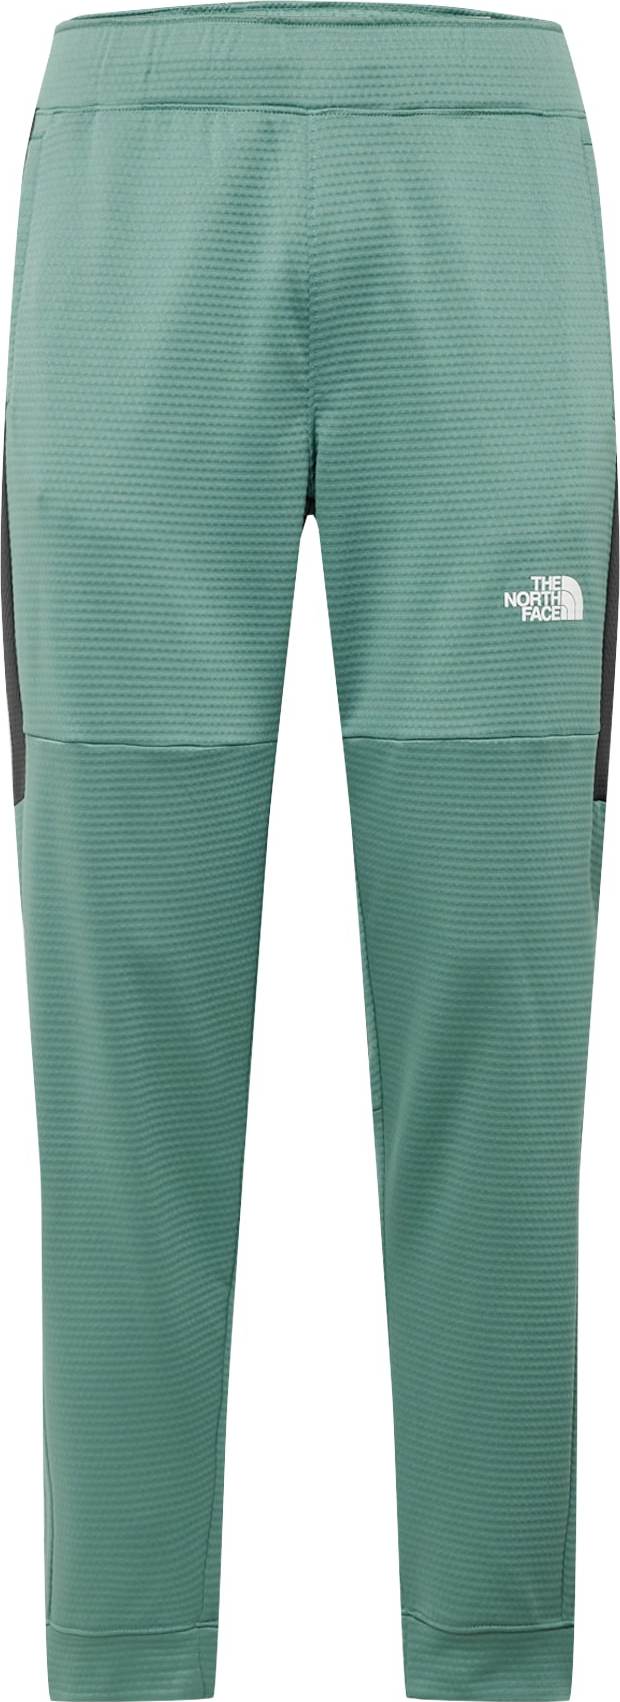 Sportovní kalhoty The North Face zelená / černá / bílá